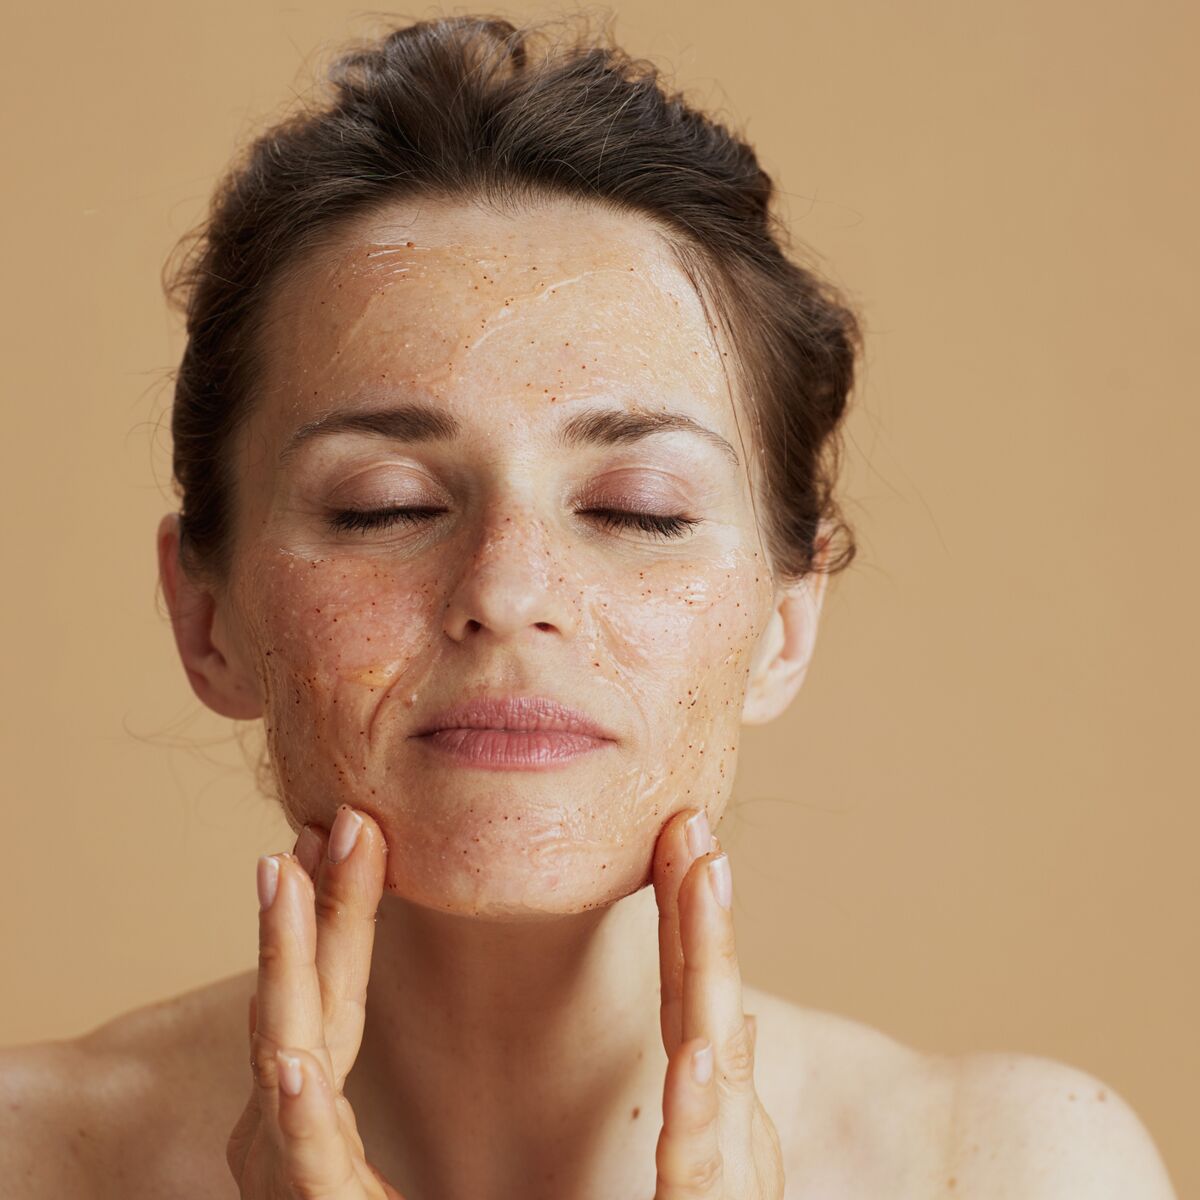 Exfolier son visage : 3 règles à suivre pour respecter sa peau 